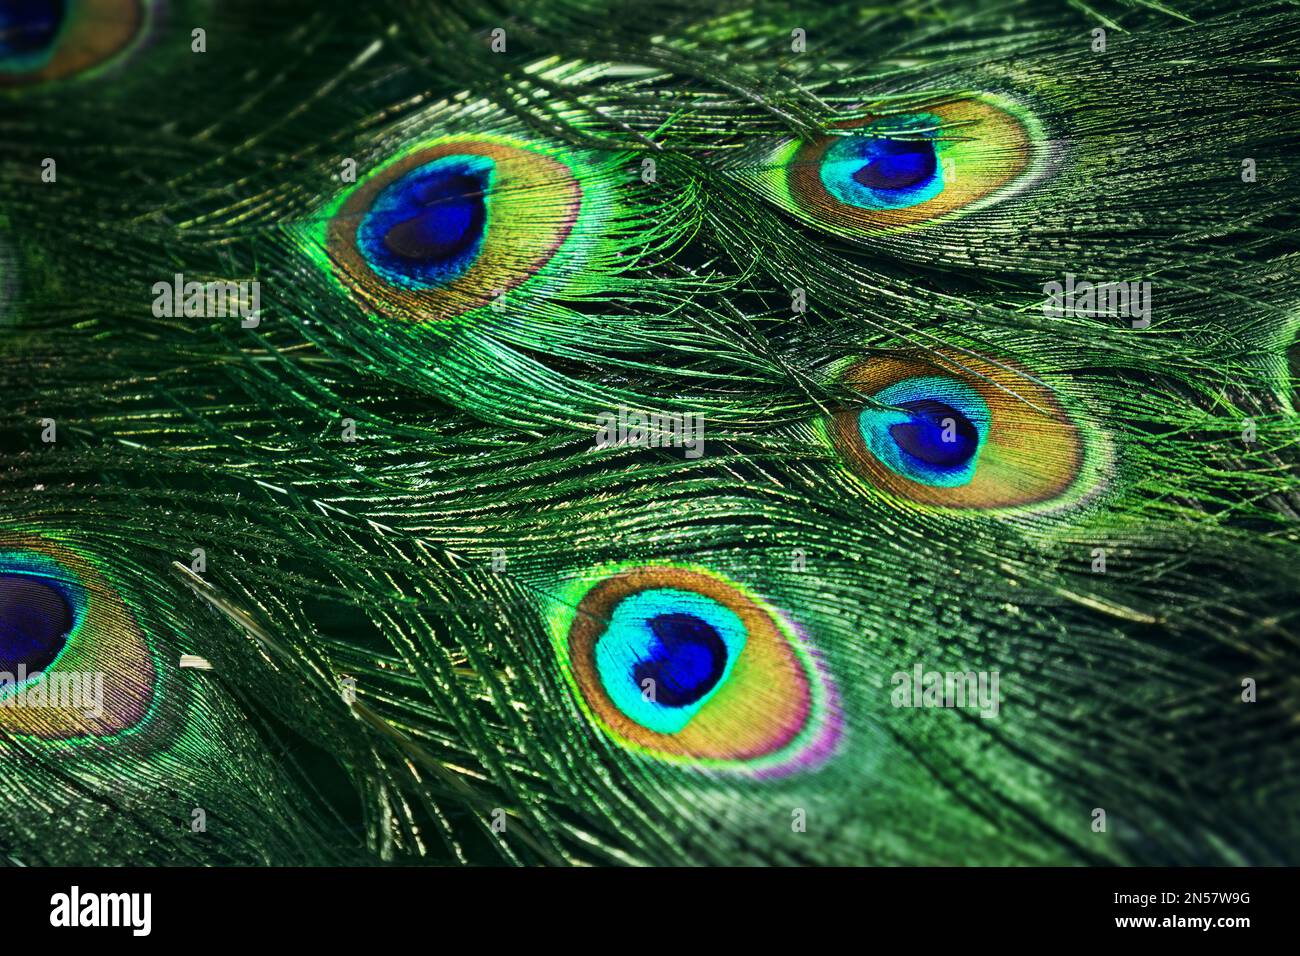 Nahaufnahme des wunderschönen Pfauenschwanzes. Grün schimmernde Federn männlicher indianervögel. Augenschmuck. Exotisches Paradies-Gefieder. Stockfoto